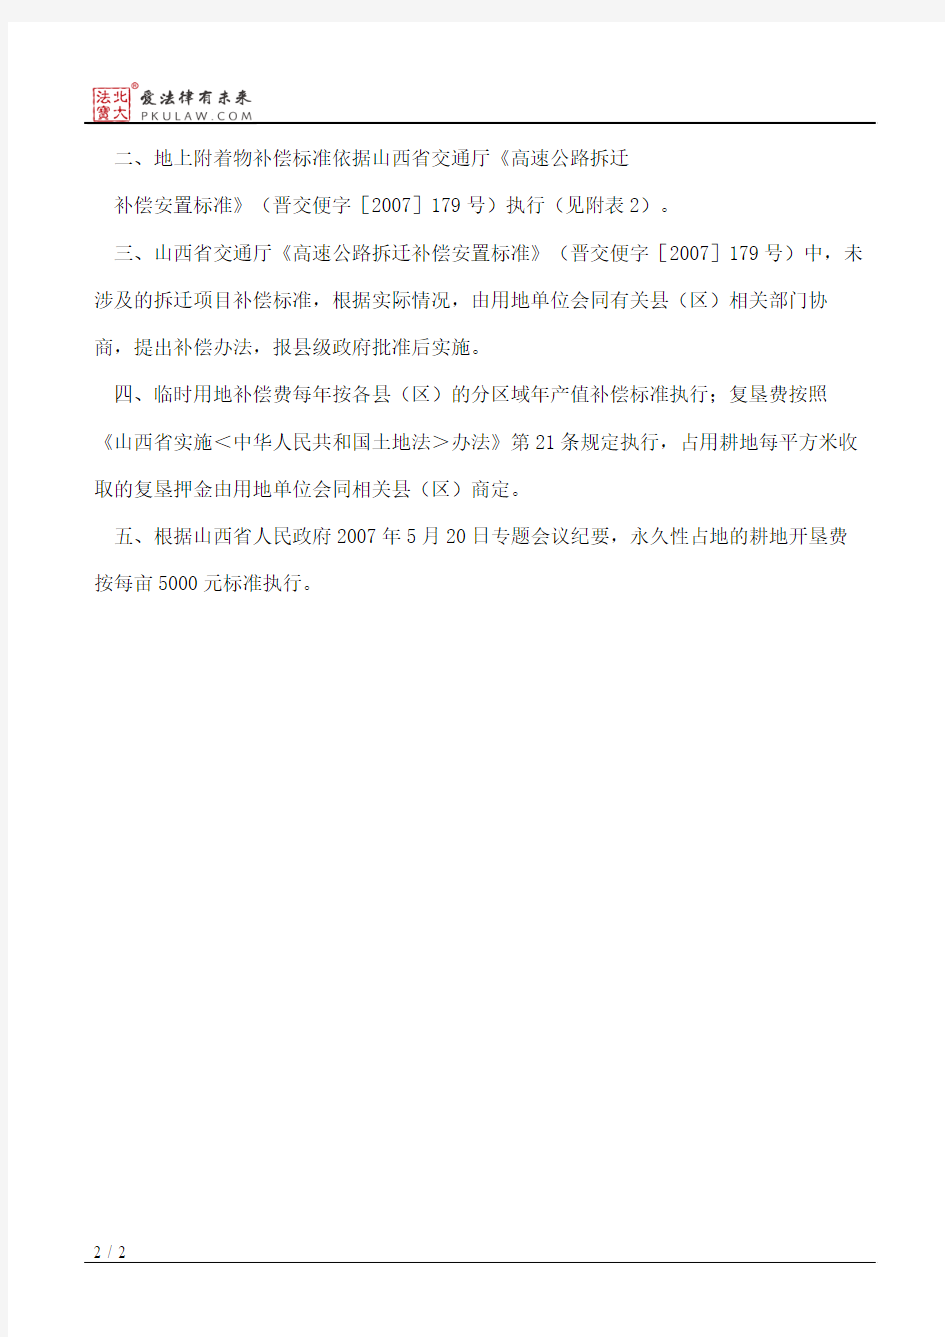 忻州市人民政府关于忻阜高速公路建设征地拆迁补偿标准的通知